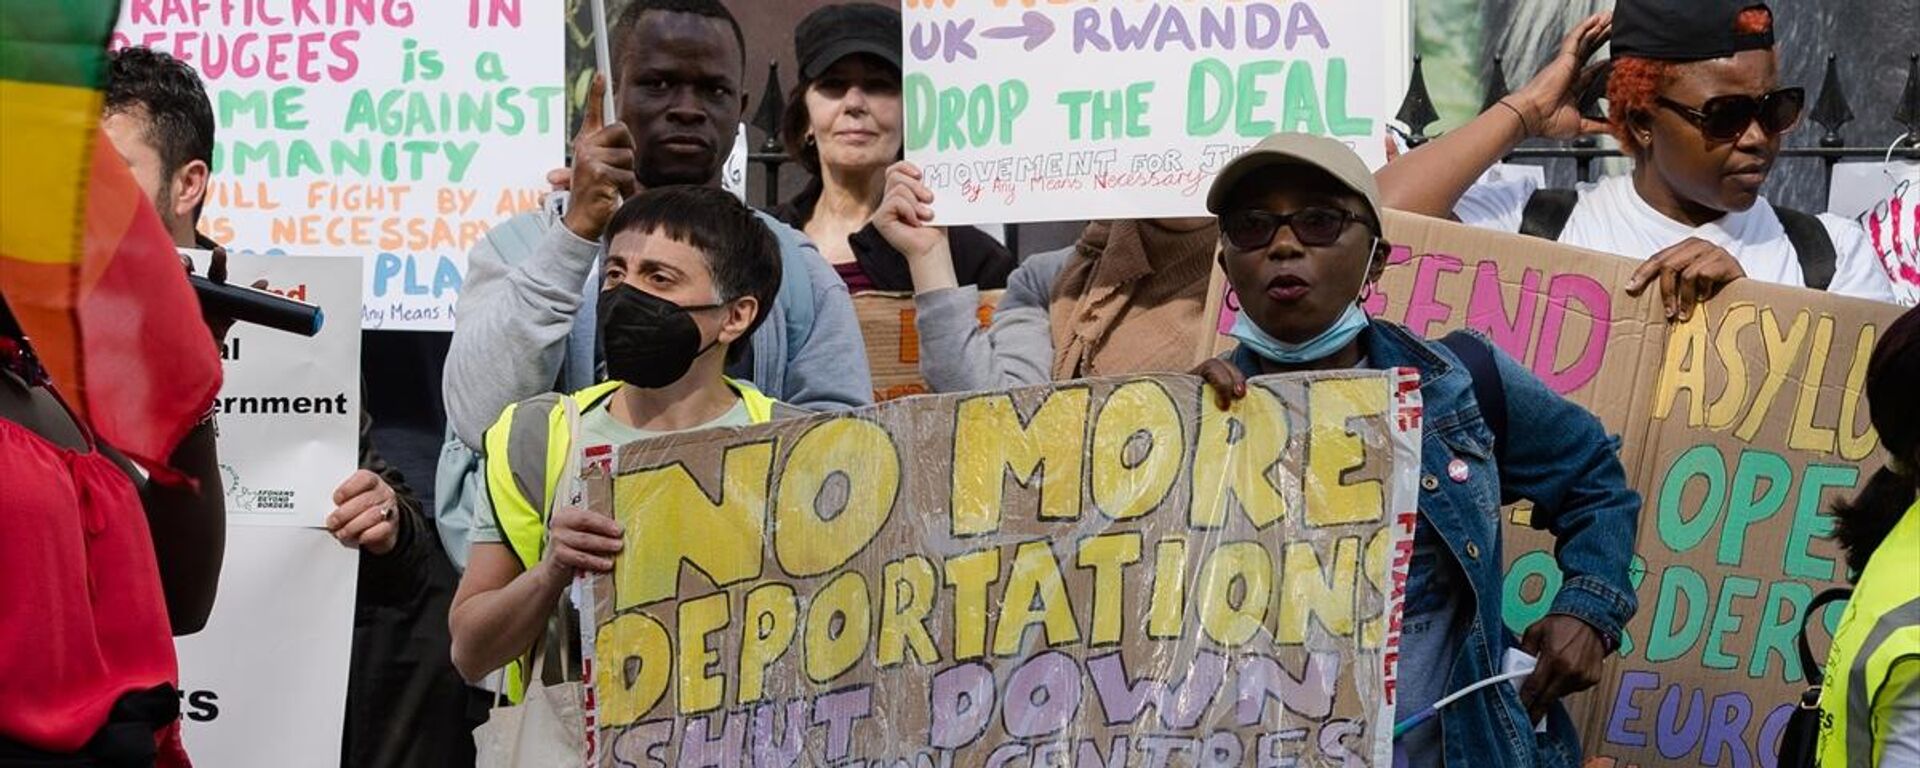 İngiltere'nin düzensiz göçmenleri Ruanda'ya gönderme planı protesto edildi - Sputnik Türkiye, 1920, 18.07.2023